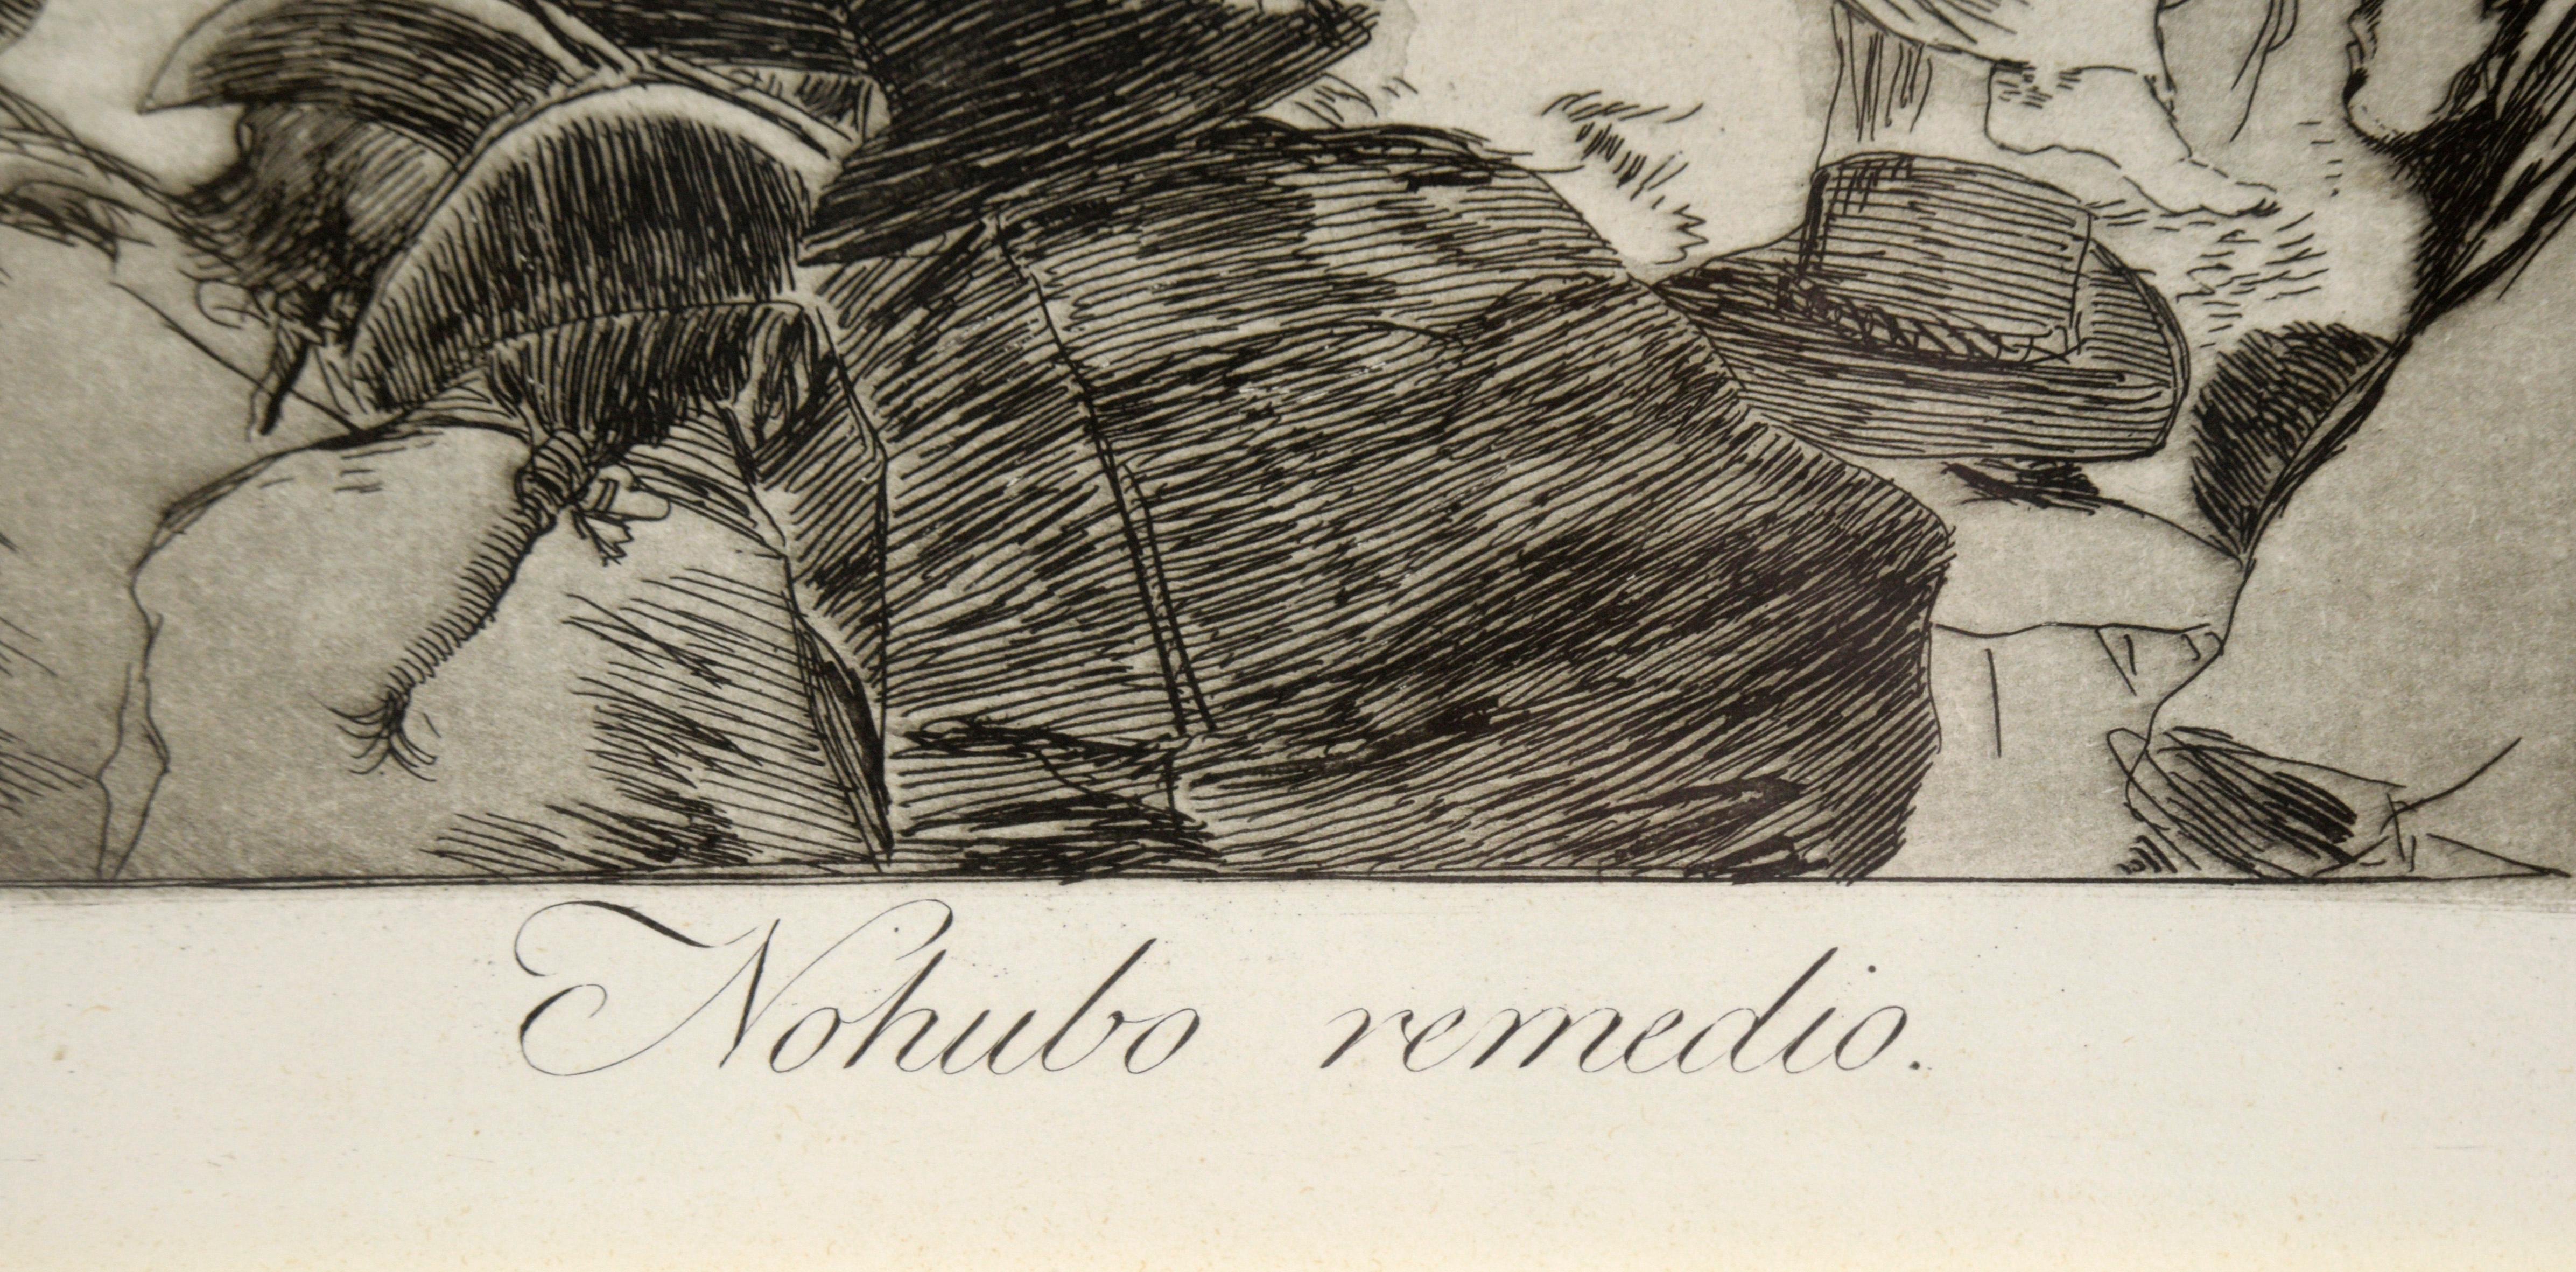 „Nohubo remedio“ (Es gab keine Lösung) – Radierung und Aquatinta auf Papier

Kühne 3. oder 4. Auflage, ca. 1868-1878, mit brünierten Aquatinten, Kaltnadelradierungen und Kupferstichen von Franciso de Goya (spanisch, 1746-1828). Schöner Abdruck in